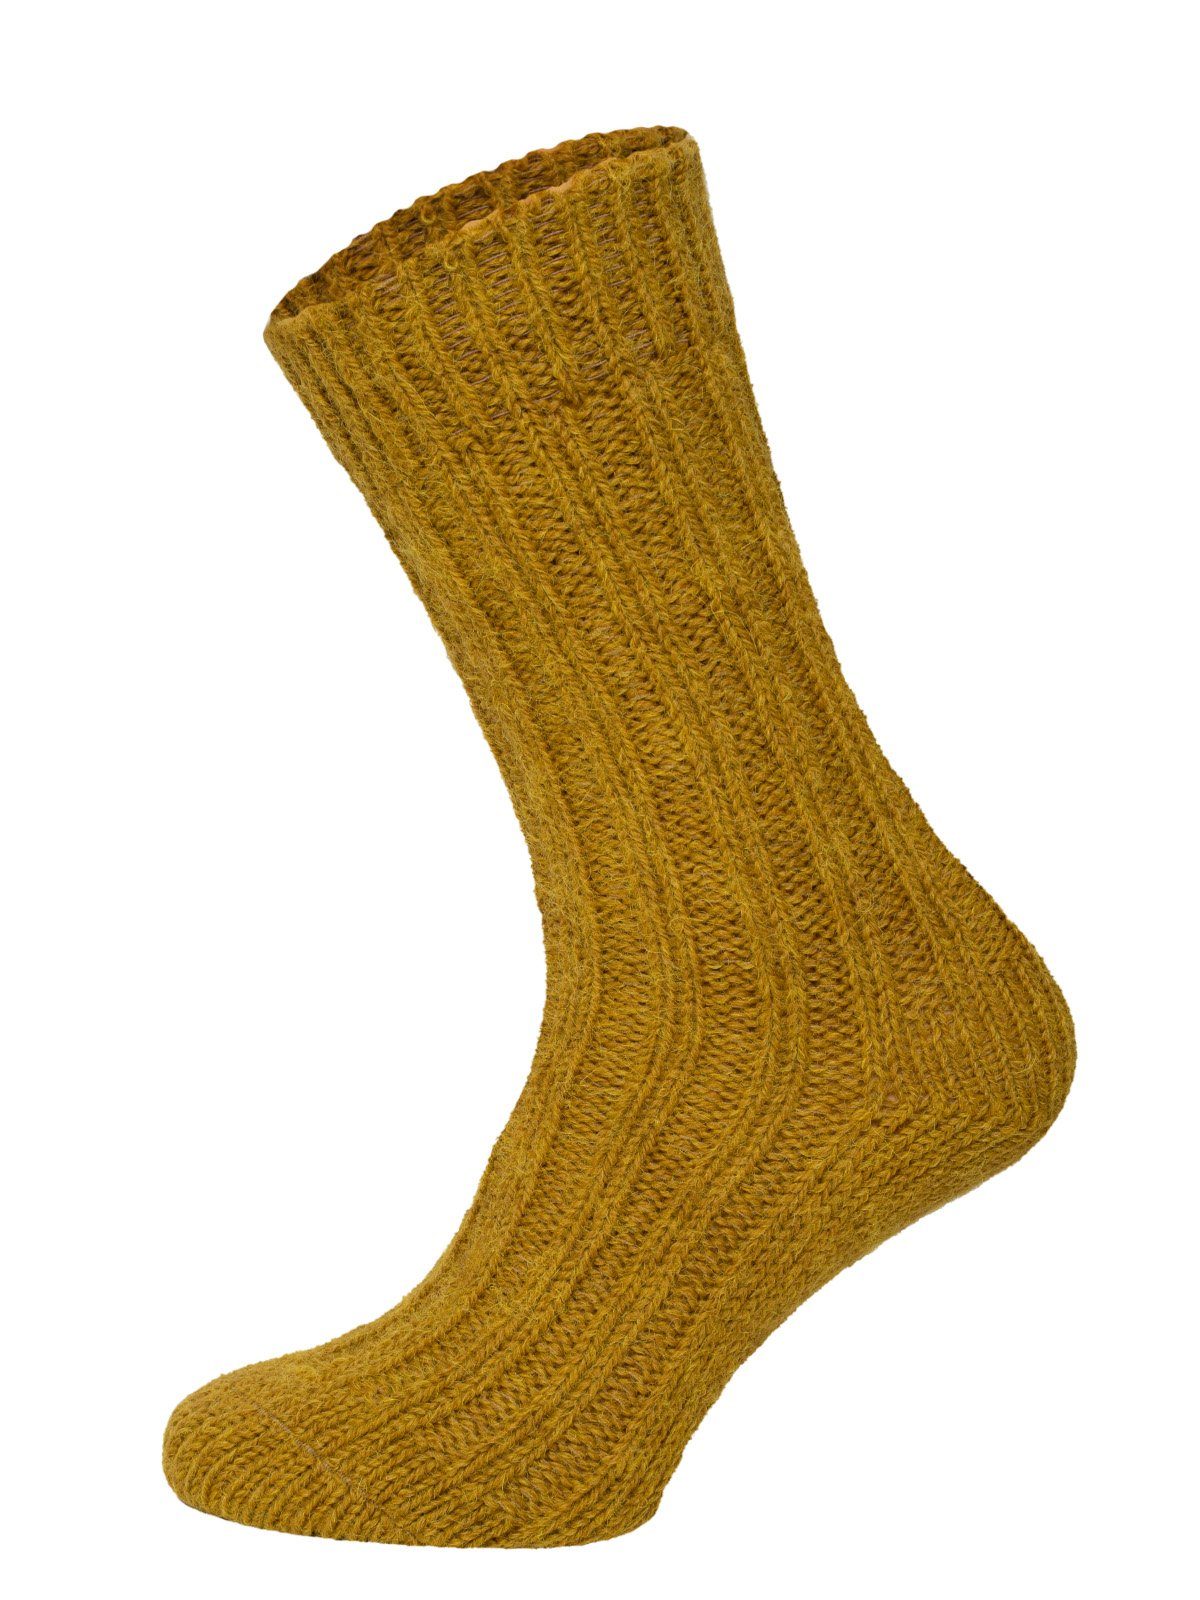 HomeOfSocks Socken Bunte Socken mit Umschlag mit Wolle und Alpakawolle Strapazierfähige und warme Socken mit 40% Wollanteil und Alpakawolle Senf